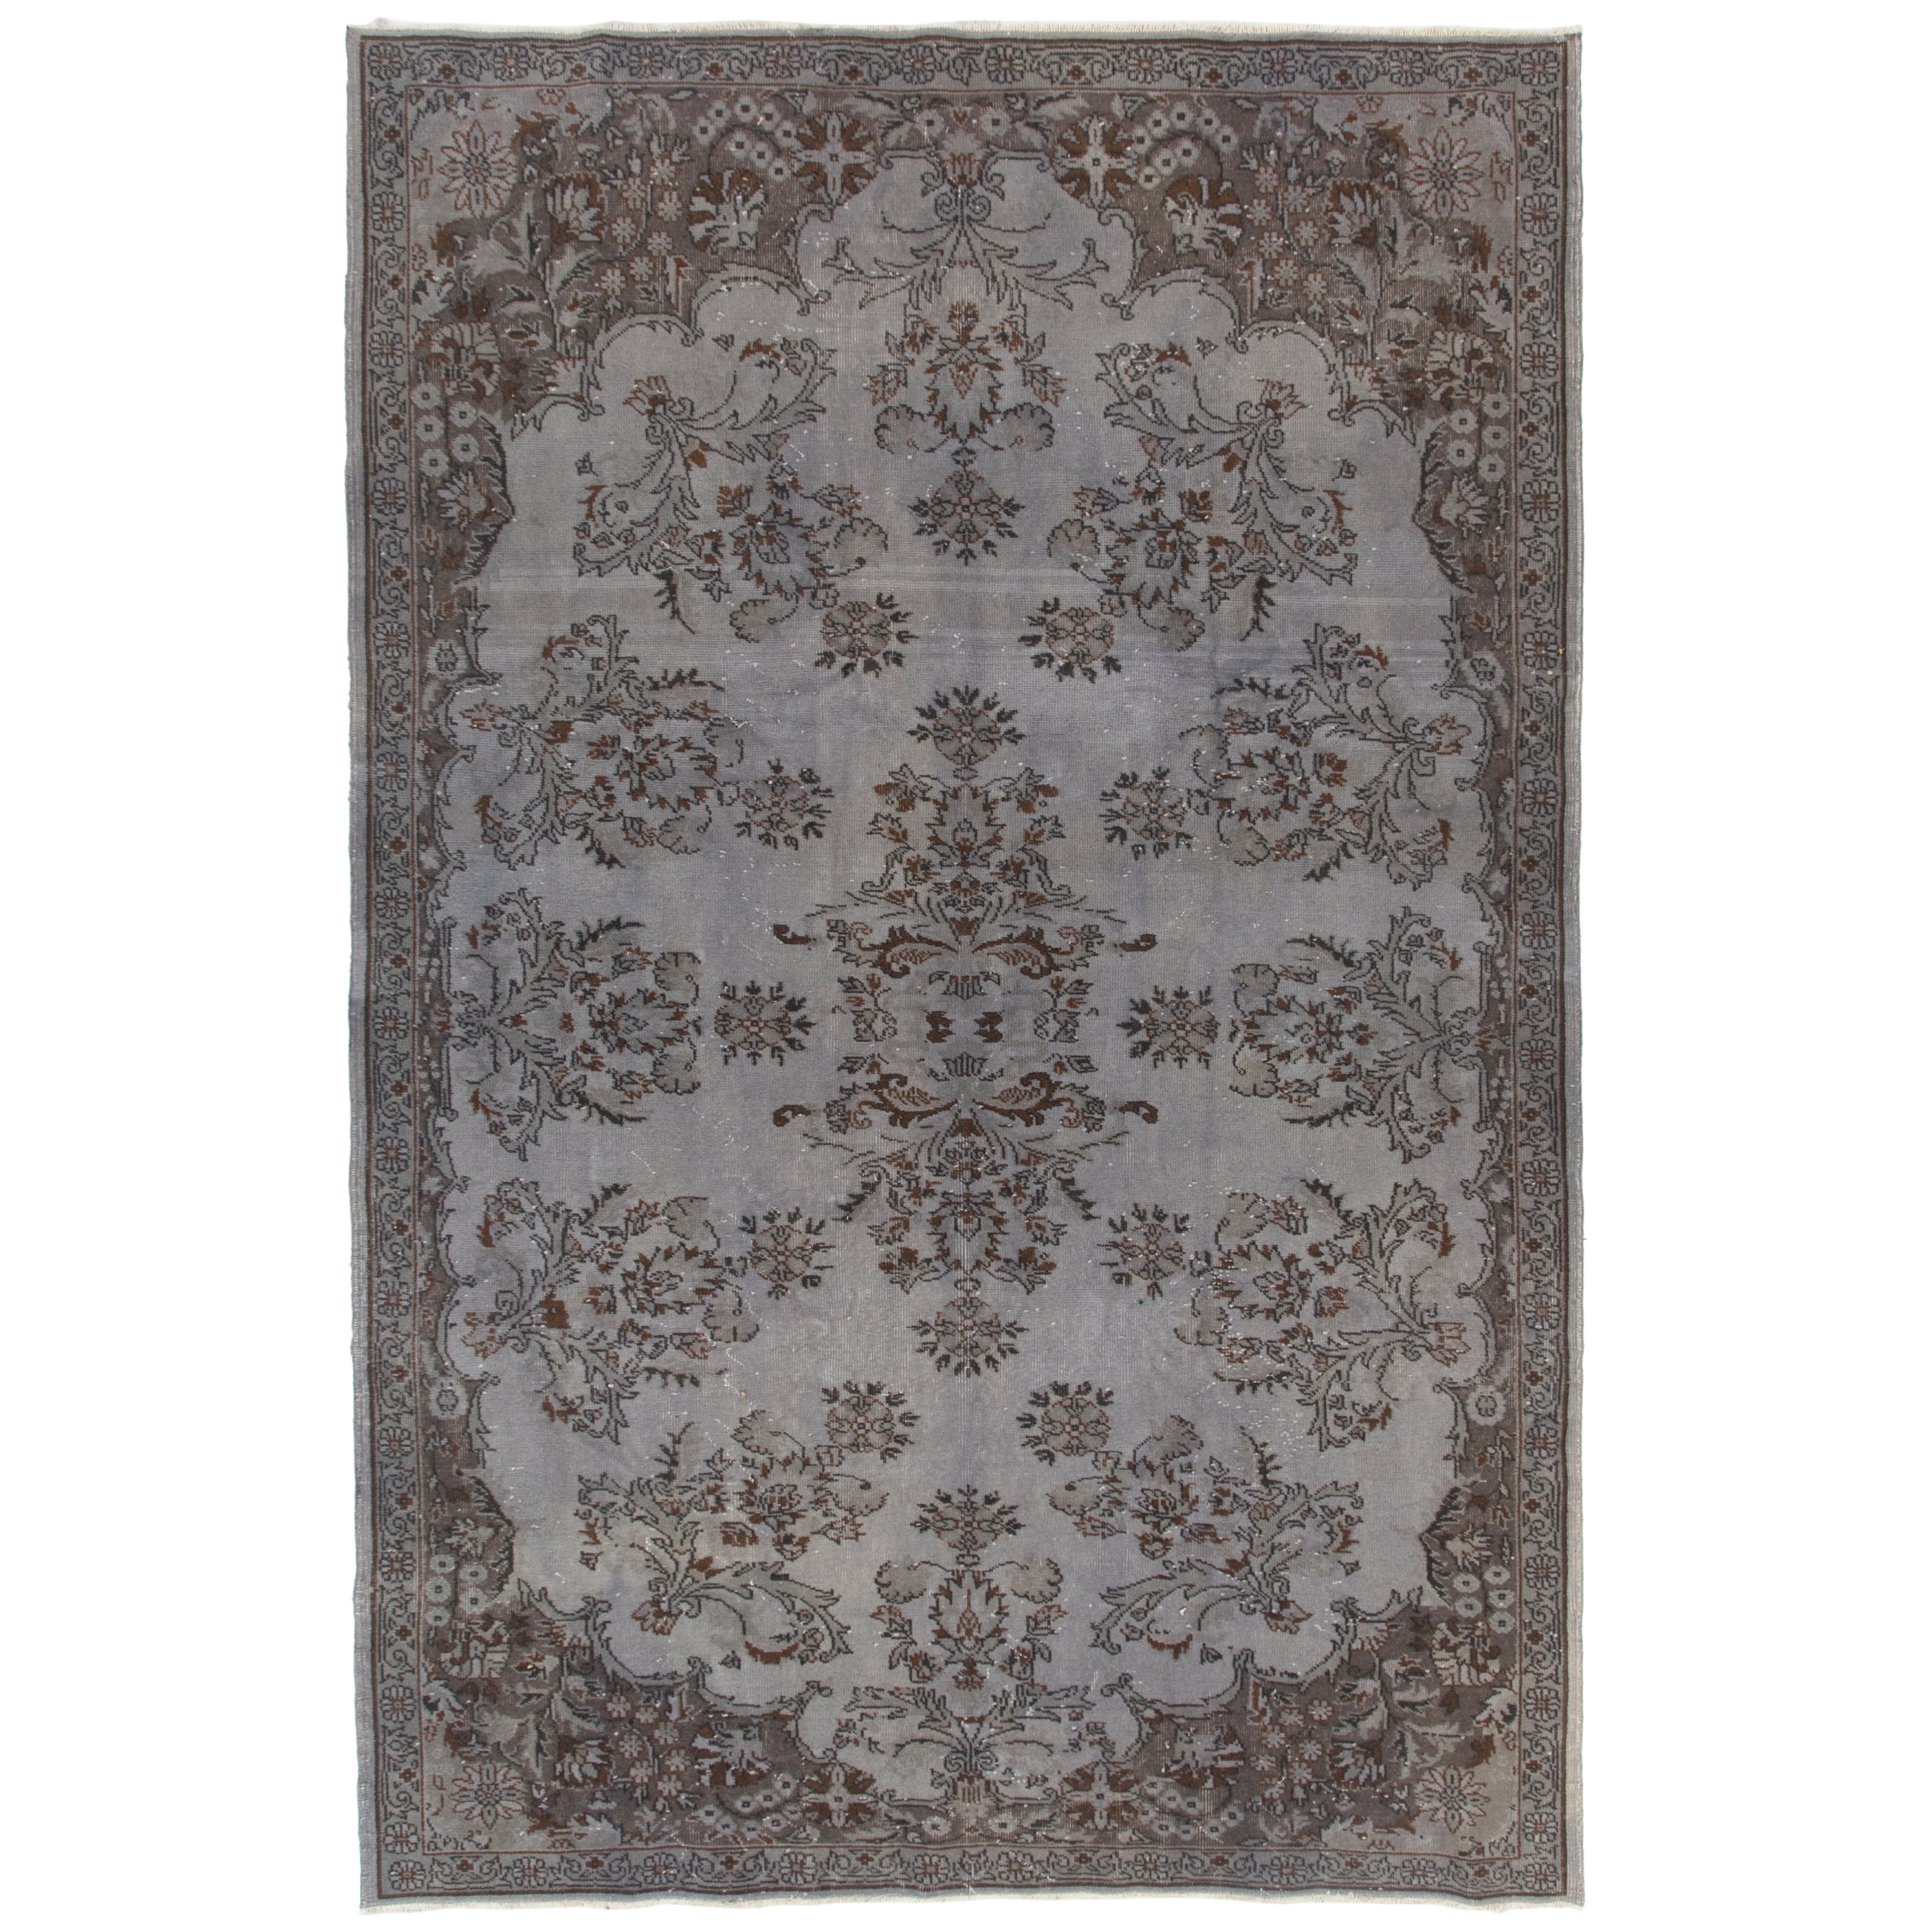 7x10,5 Ft Handgeknüpfter türkischer Vintage-Teppich in Grau, neu gefärbt, für Modern Interiors